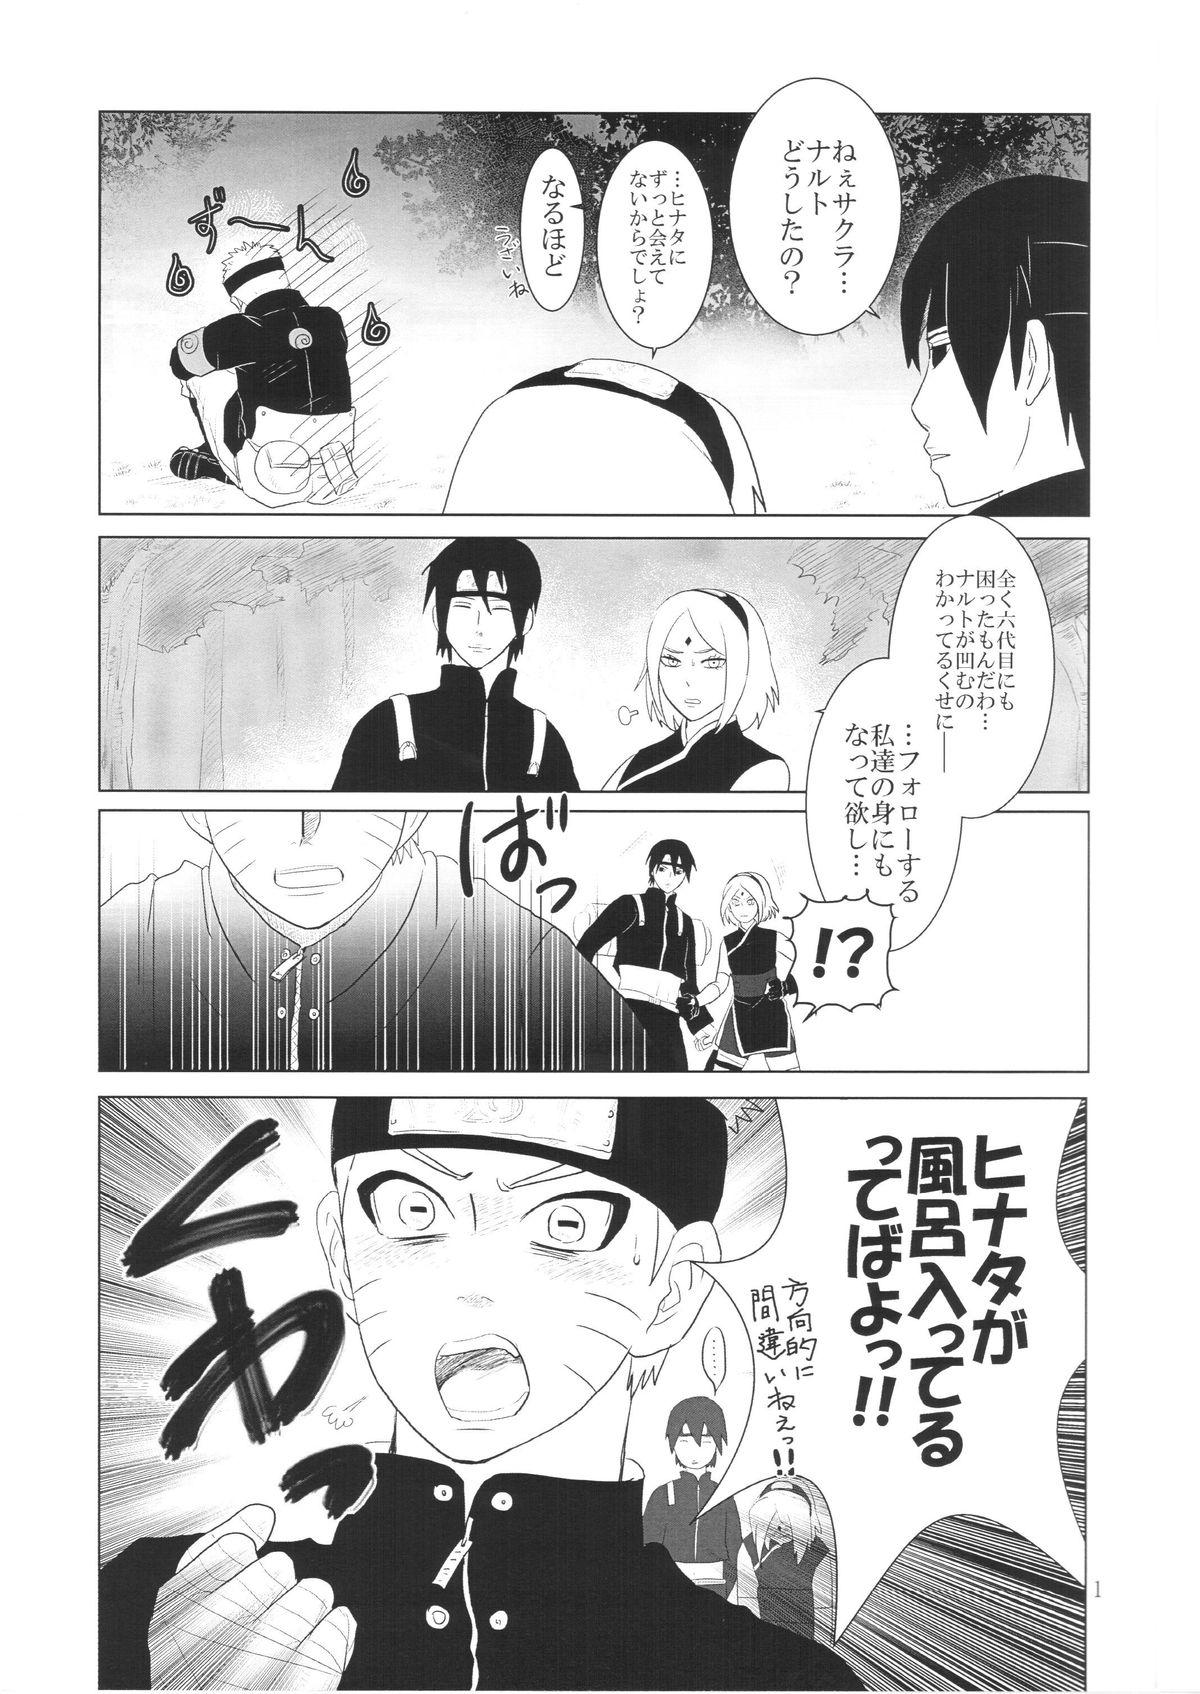 Tribbing Kanata no omoi wa ryoute ni tokeru - Naruto Hard Sex - Page 4